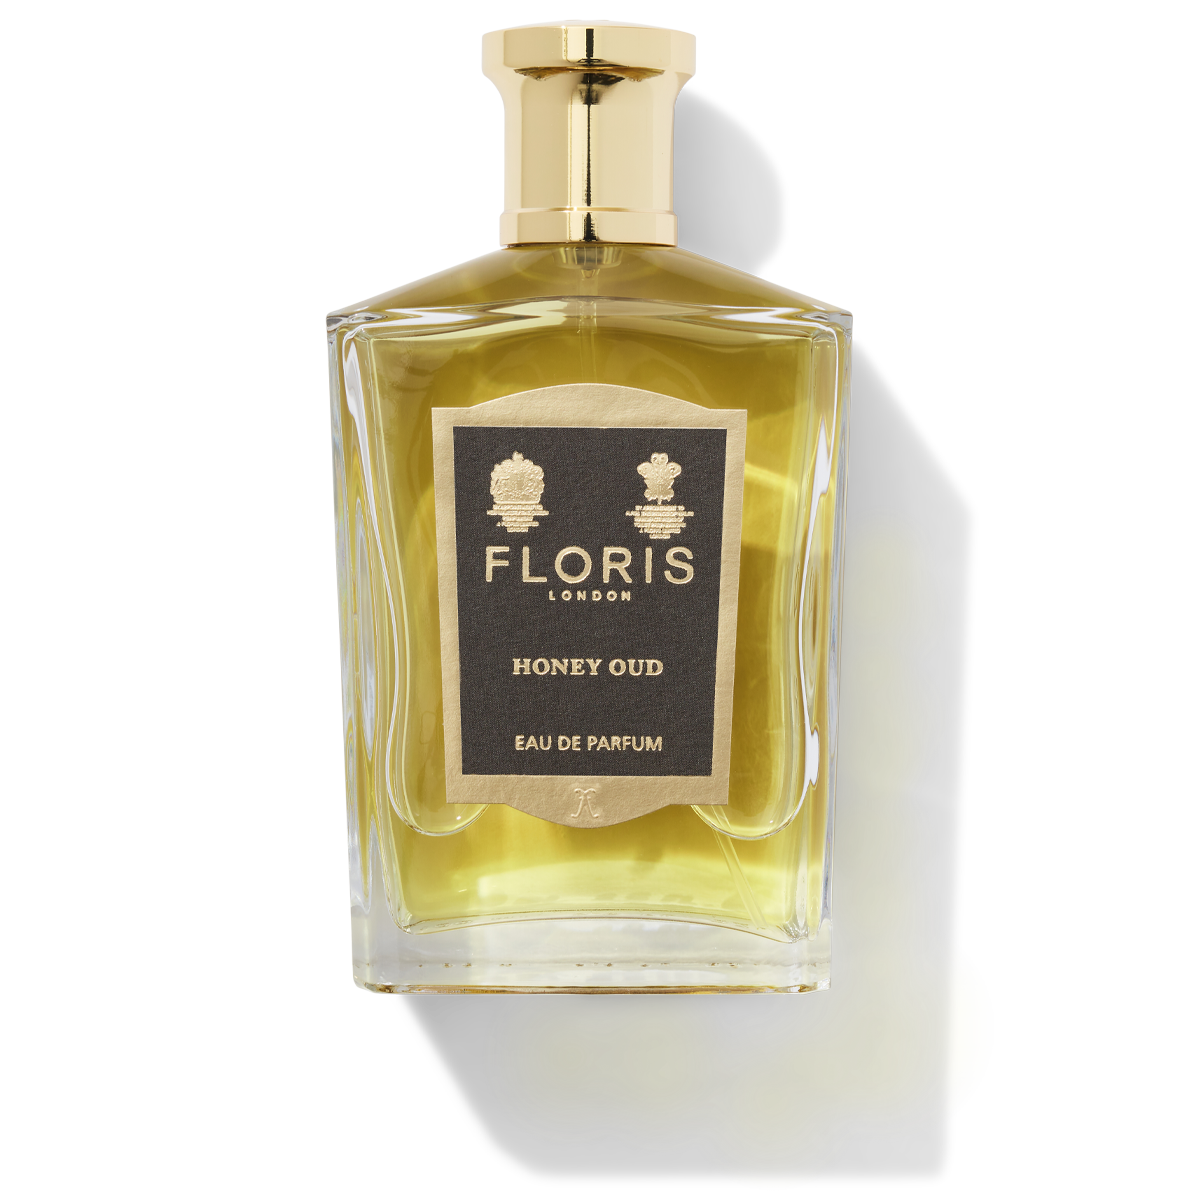 Floris London Honey Oud Eau de Parfum glass bottle